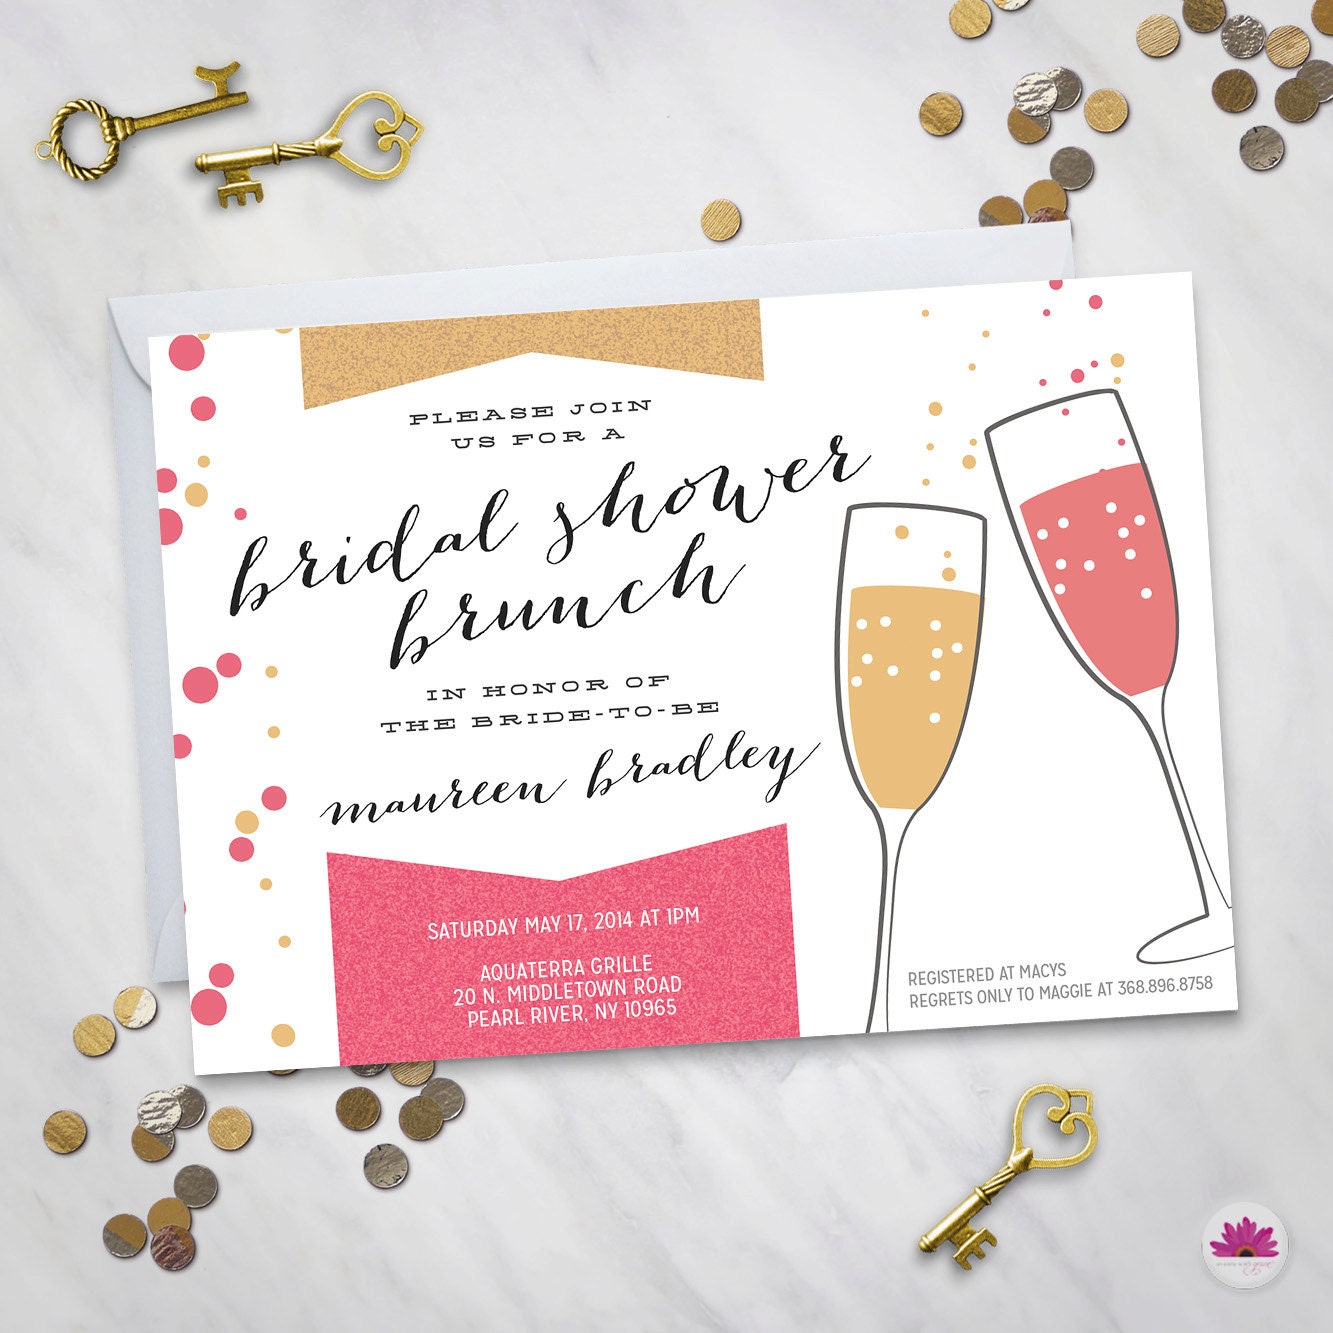 Bridal Shower Brunch Invitation Digital file